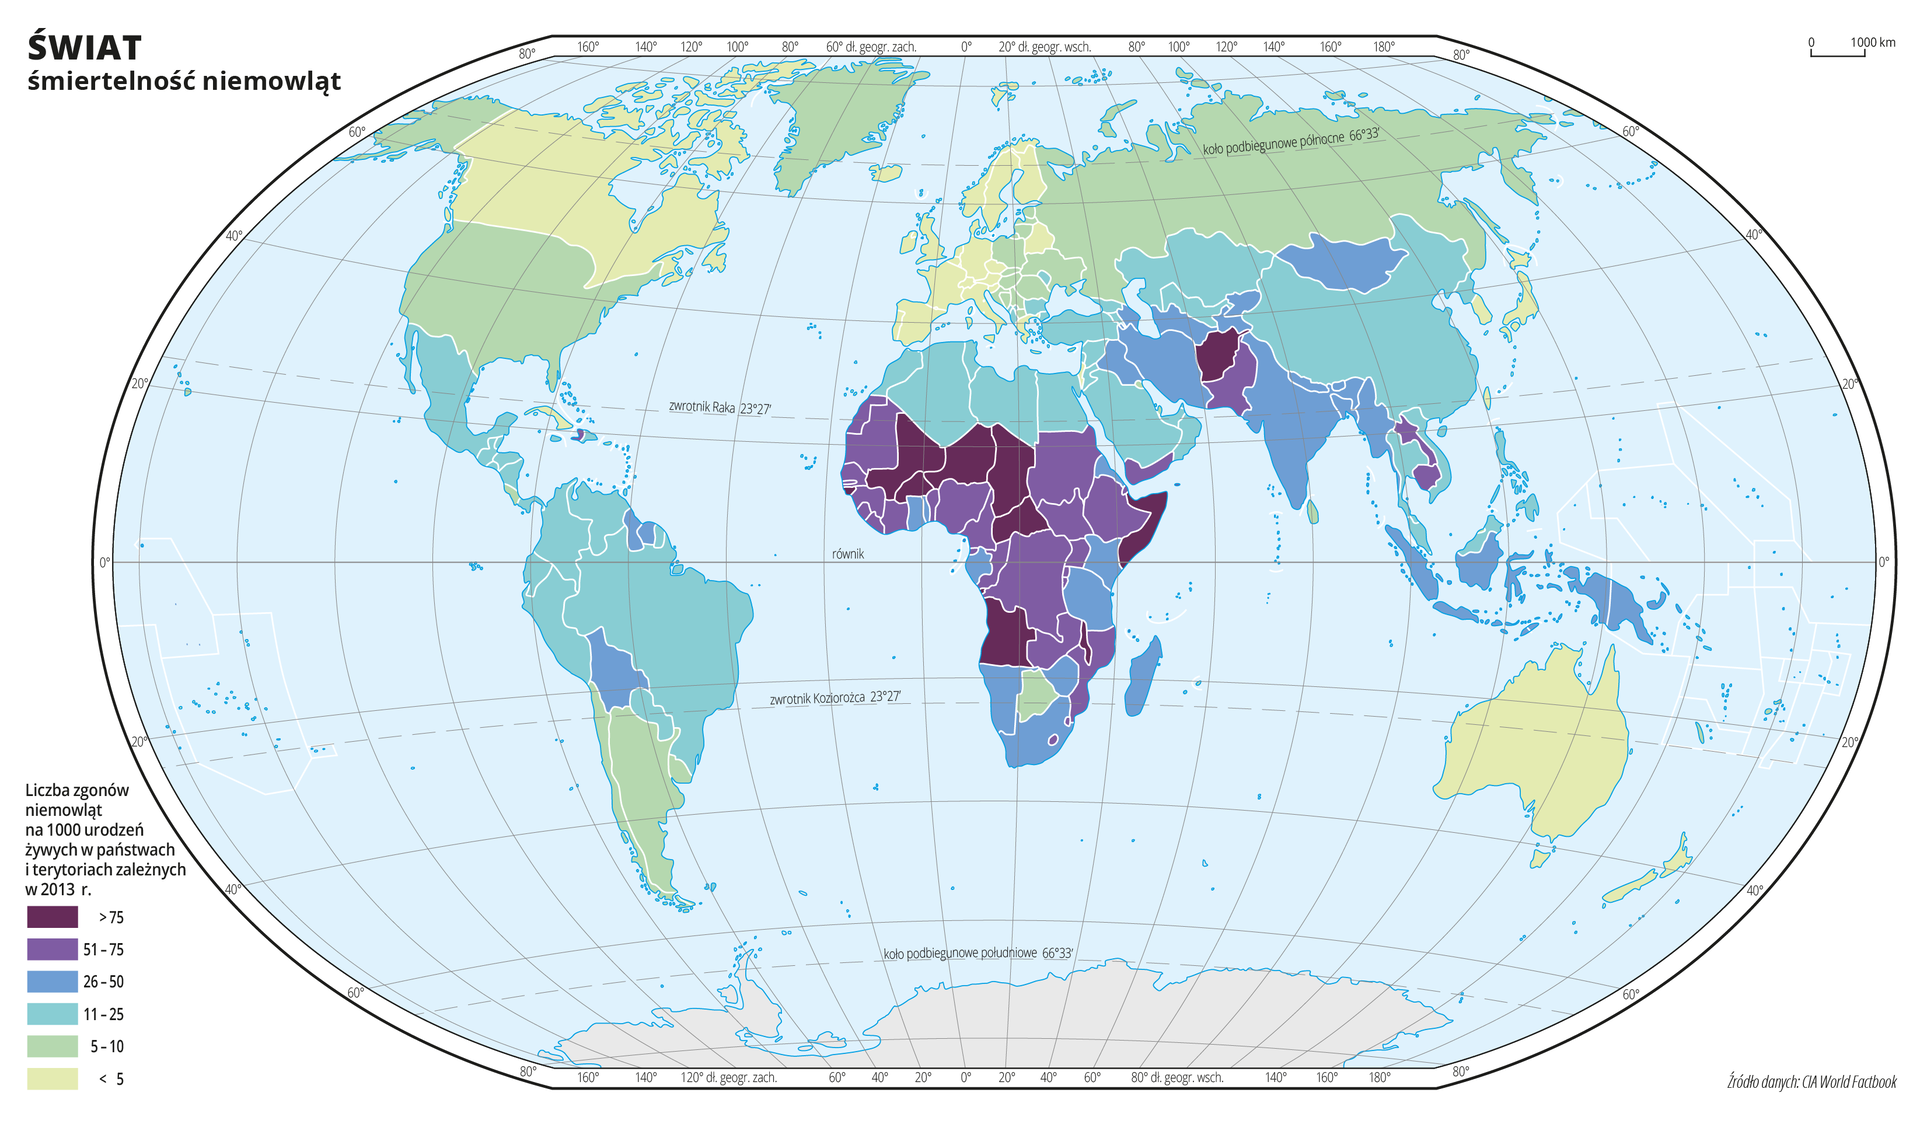 Ilustracja przedstawia mapę świata. Wody zaznaczono kolorem niebieskim. Na mapie za pomocą sześciu kolorów (od ciemnofioletowego, przez jasnofioletowy, niebieski, jasnoniebieski, seledynowy i jasnoseledynowy)przedstawiono liczbę zgonów niemowląt na tysiąc urodzeń żywych w poszczególnych państwach w dwa tysiące trzynastym roku.Kolory fioletowe obrazujące liczbę zgonów niemowląt powyżej pięćdziesiąt na tysiąc żywych urodzeń występują w środkowej części Afryki oraz Afganistanie i Pakistanie.Kolory niebieskie obrazujące ilość zgonów niemowląt na tysiąc urodzeń żywych w przedziale pomiędzy jedenaście a pięćdziesiąt występują w Ameryce Południowej, południowej część Azji i na Archipelagu Malezyjskim, w północnej i południowej części Afryki.Kolory seledynowe obrazujące liczbę zgonów niemowląt na tysiąc urodzeń żywych poniżej dziesięciu występują w Ameryce Północnej, Europie, północnej części Azji i w Australii przy czym wartości poniżej pięciu zgonów niemowląt na tysiąc urodzeń żywych występują w Stanach Zjednoczonych, Europie Zachodniej i Australii. Mapa pokryta jest równoleżnikami i południkami. Dookoła mapy w białej ramce opisano współrzędne geograficzne co dwadzieścia stopni.Na dole mapy narysowano sześć kolorowych prostokątów i opisano jaką liczbę zgonów niemowląt na tysiąc urodzeń żywych w poszczególnych państwach w dwa tysiące trzynastym roku obrazuje każdy kolor.